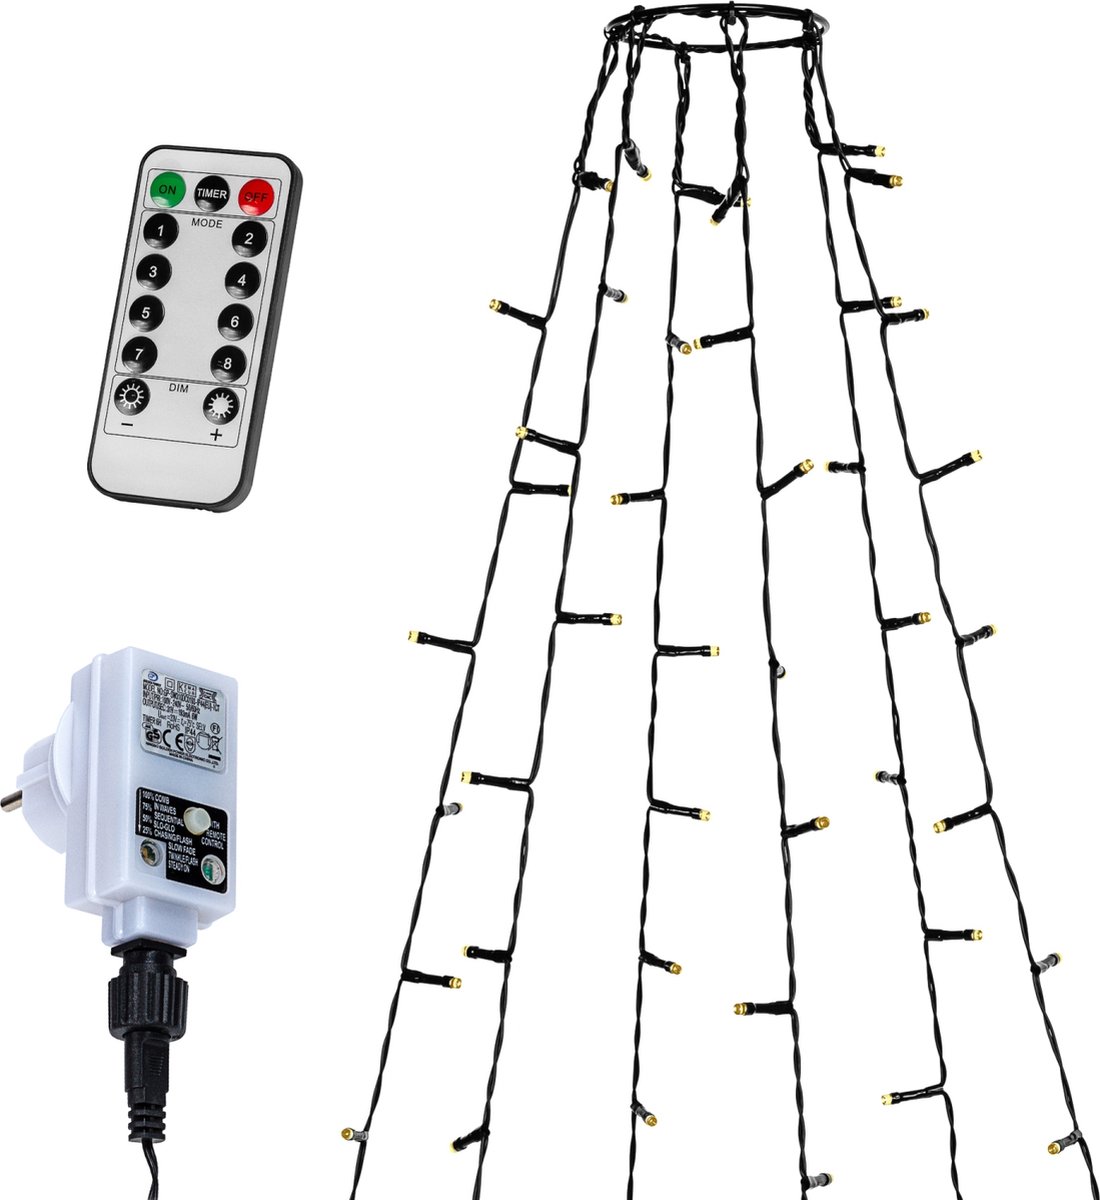 VOLTRONIC Vlaggenmast Lichtsnoer - Verlichting - 192 LEDs - Met Afstandsbediening - Buitenverlichting - 2 m Lang - Warm Wit